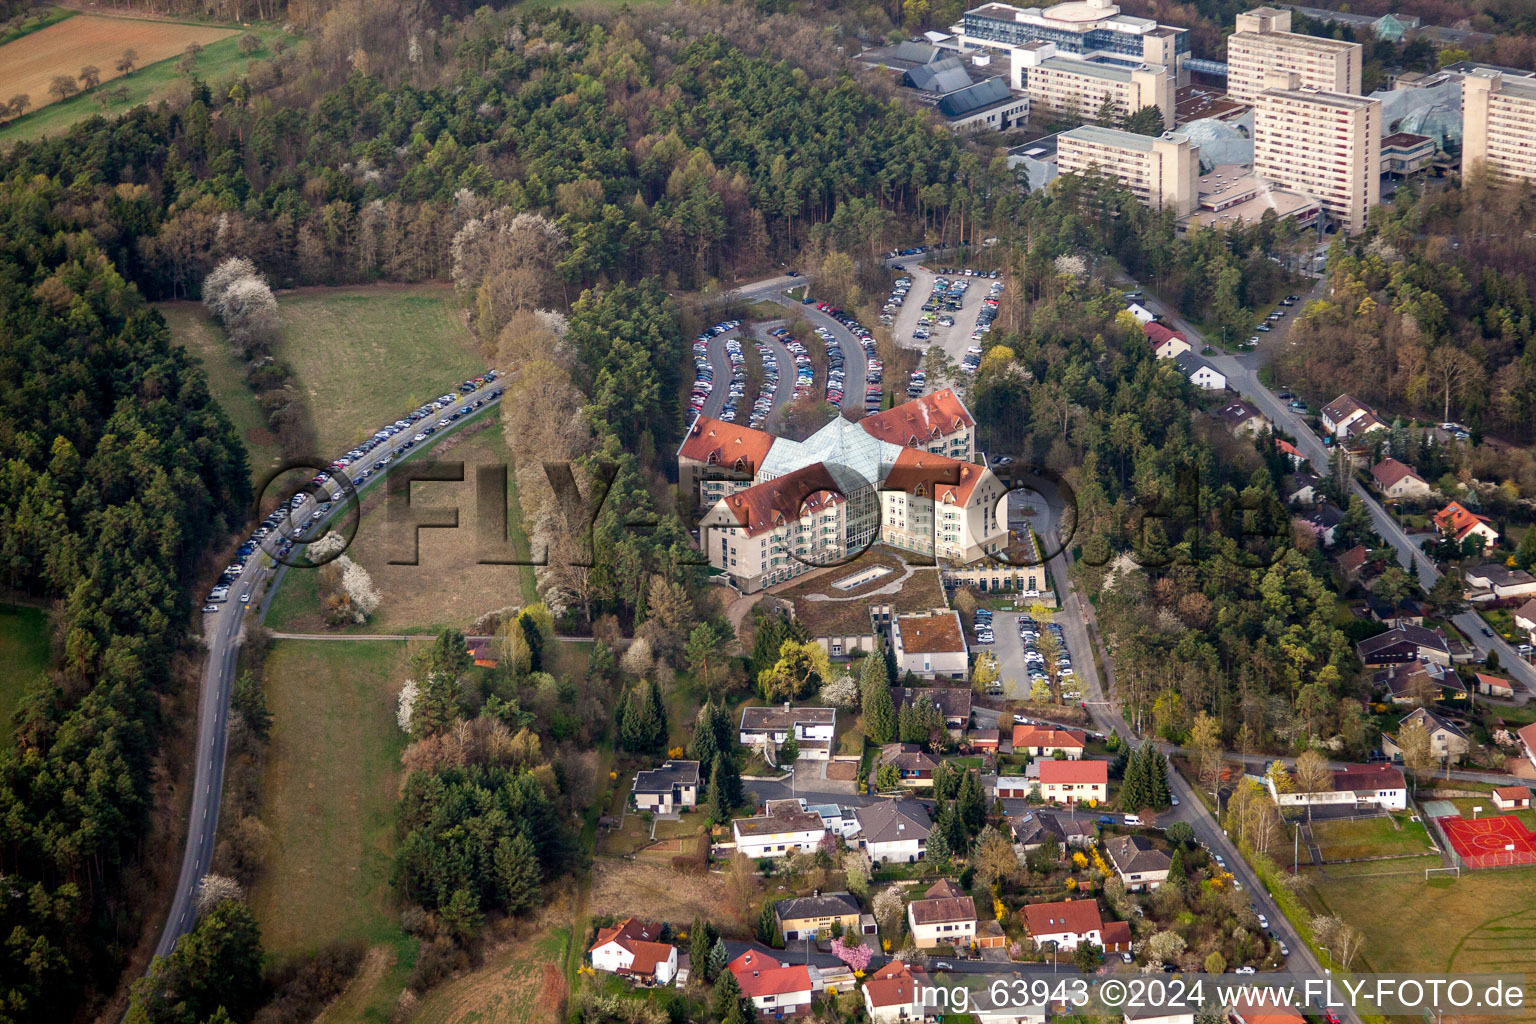 Klinikgelände des Krankenhauses Neurologische Klinik Bad Neustadt an der Saale in Bad Neustadt an der Saale im Bundesland Bayern, Deutschland